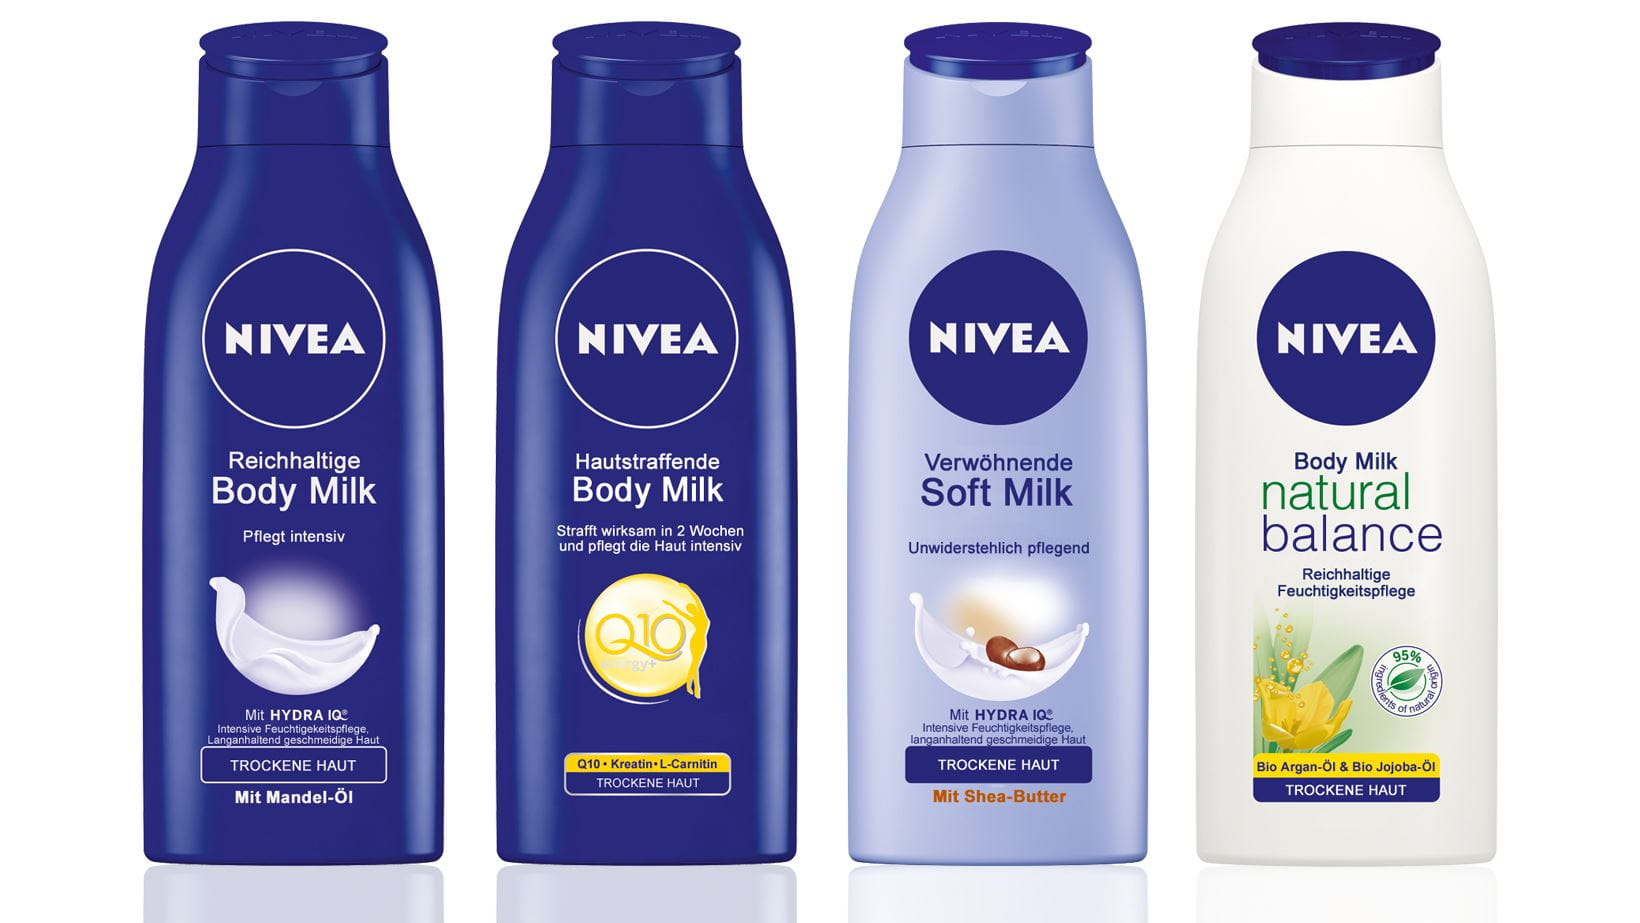 NIVEA Milk